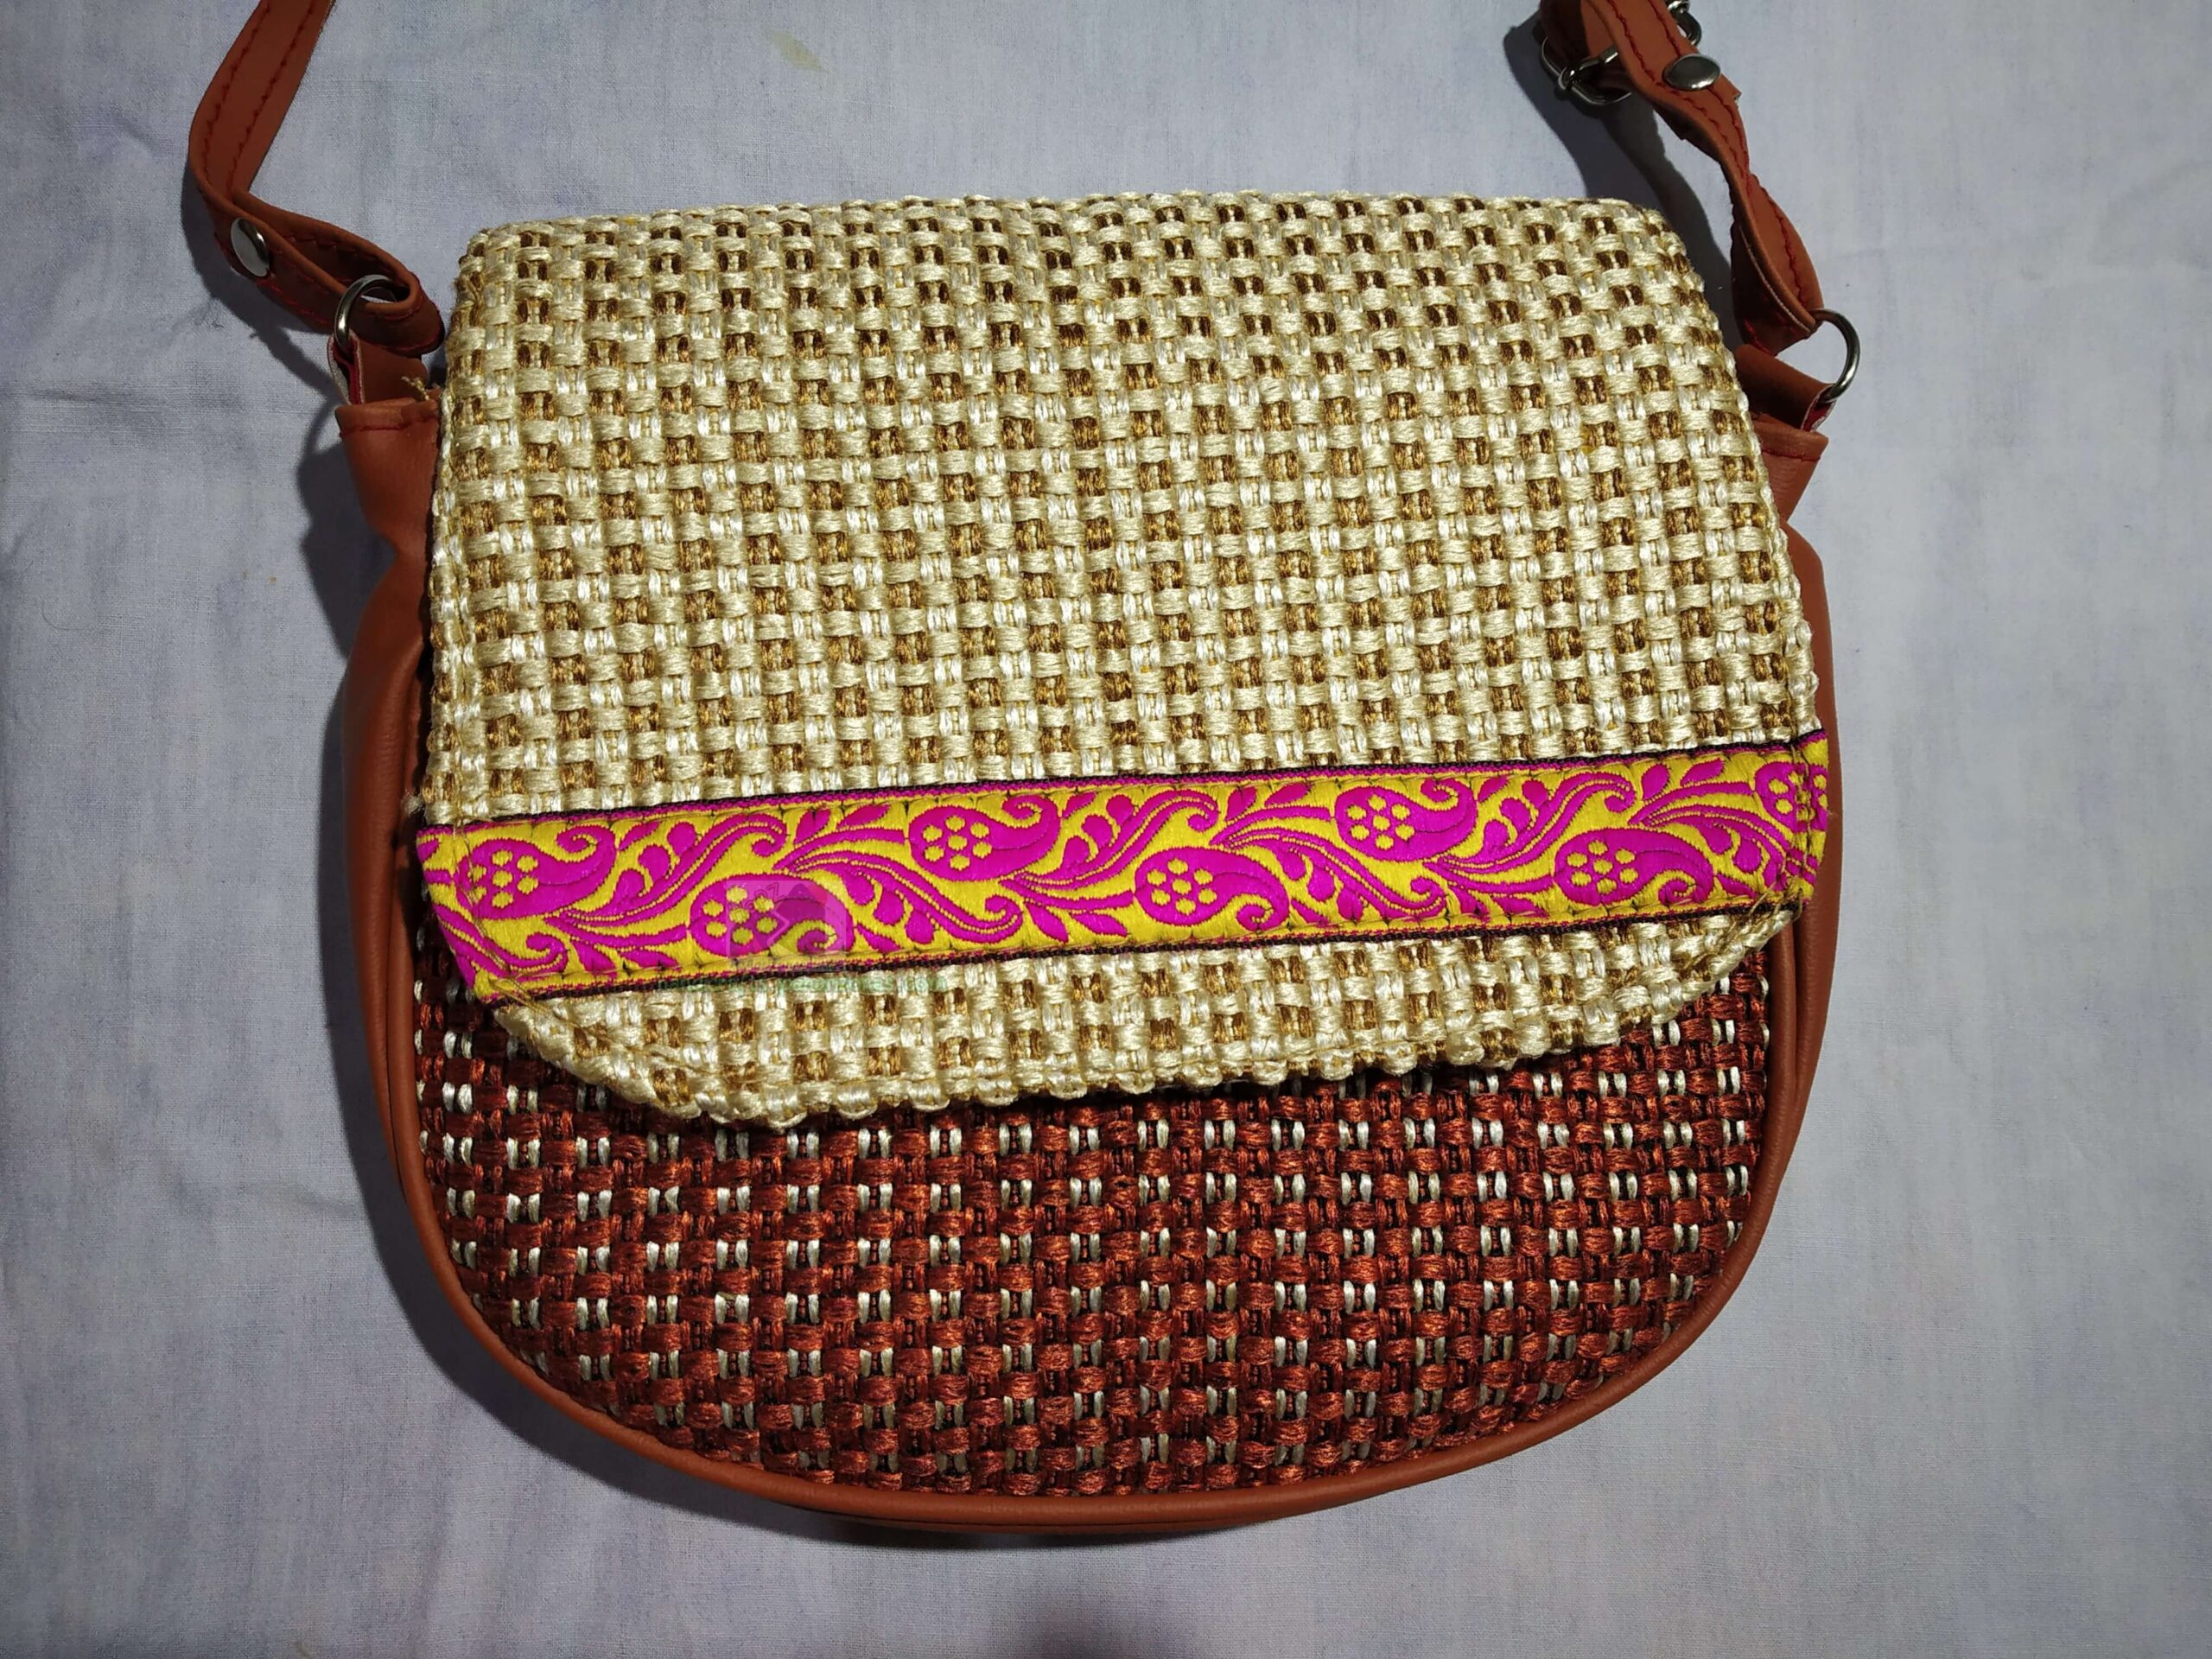 Buy Daffodil Jute Bagg | Tote Bag | Handcrafted Kalamkari Pocket Bag |  Multipurpose Carry Bag | Durable Bags for Men & Women | Jute Handbags with  Latkan (Deer Pocket) at Amazon.in